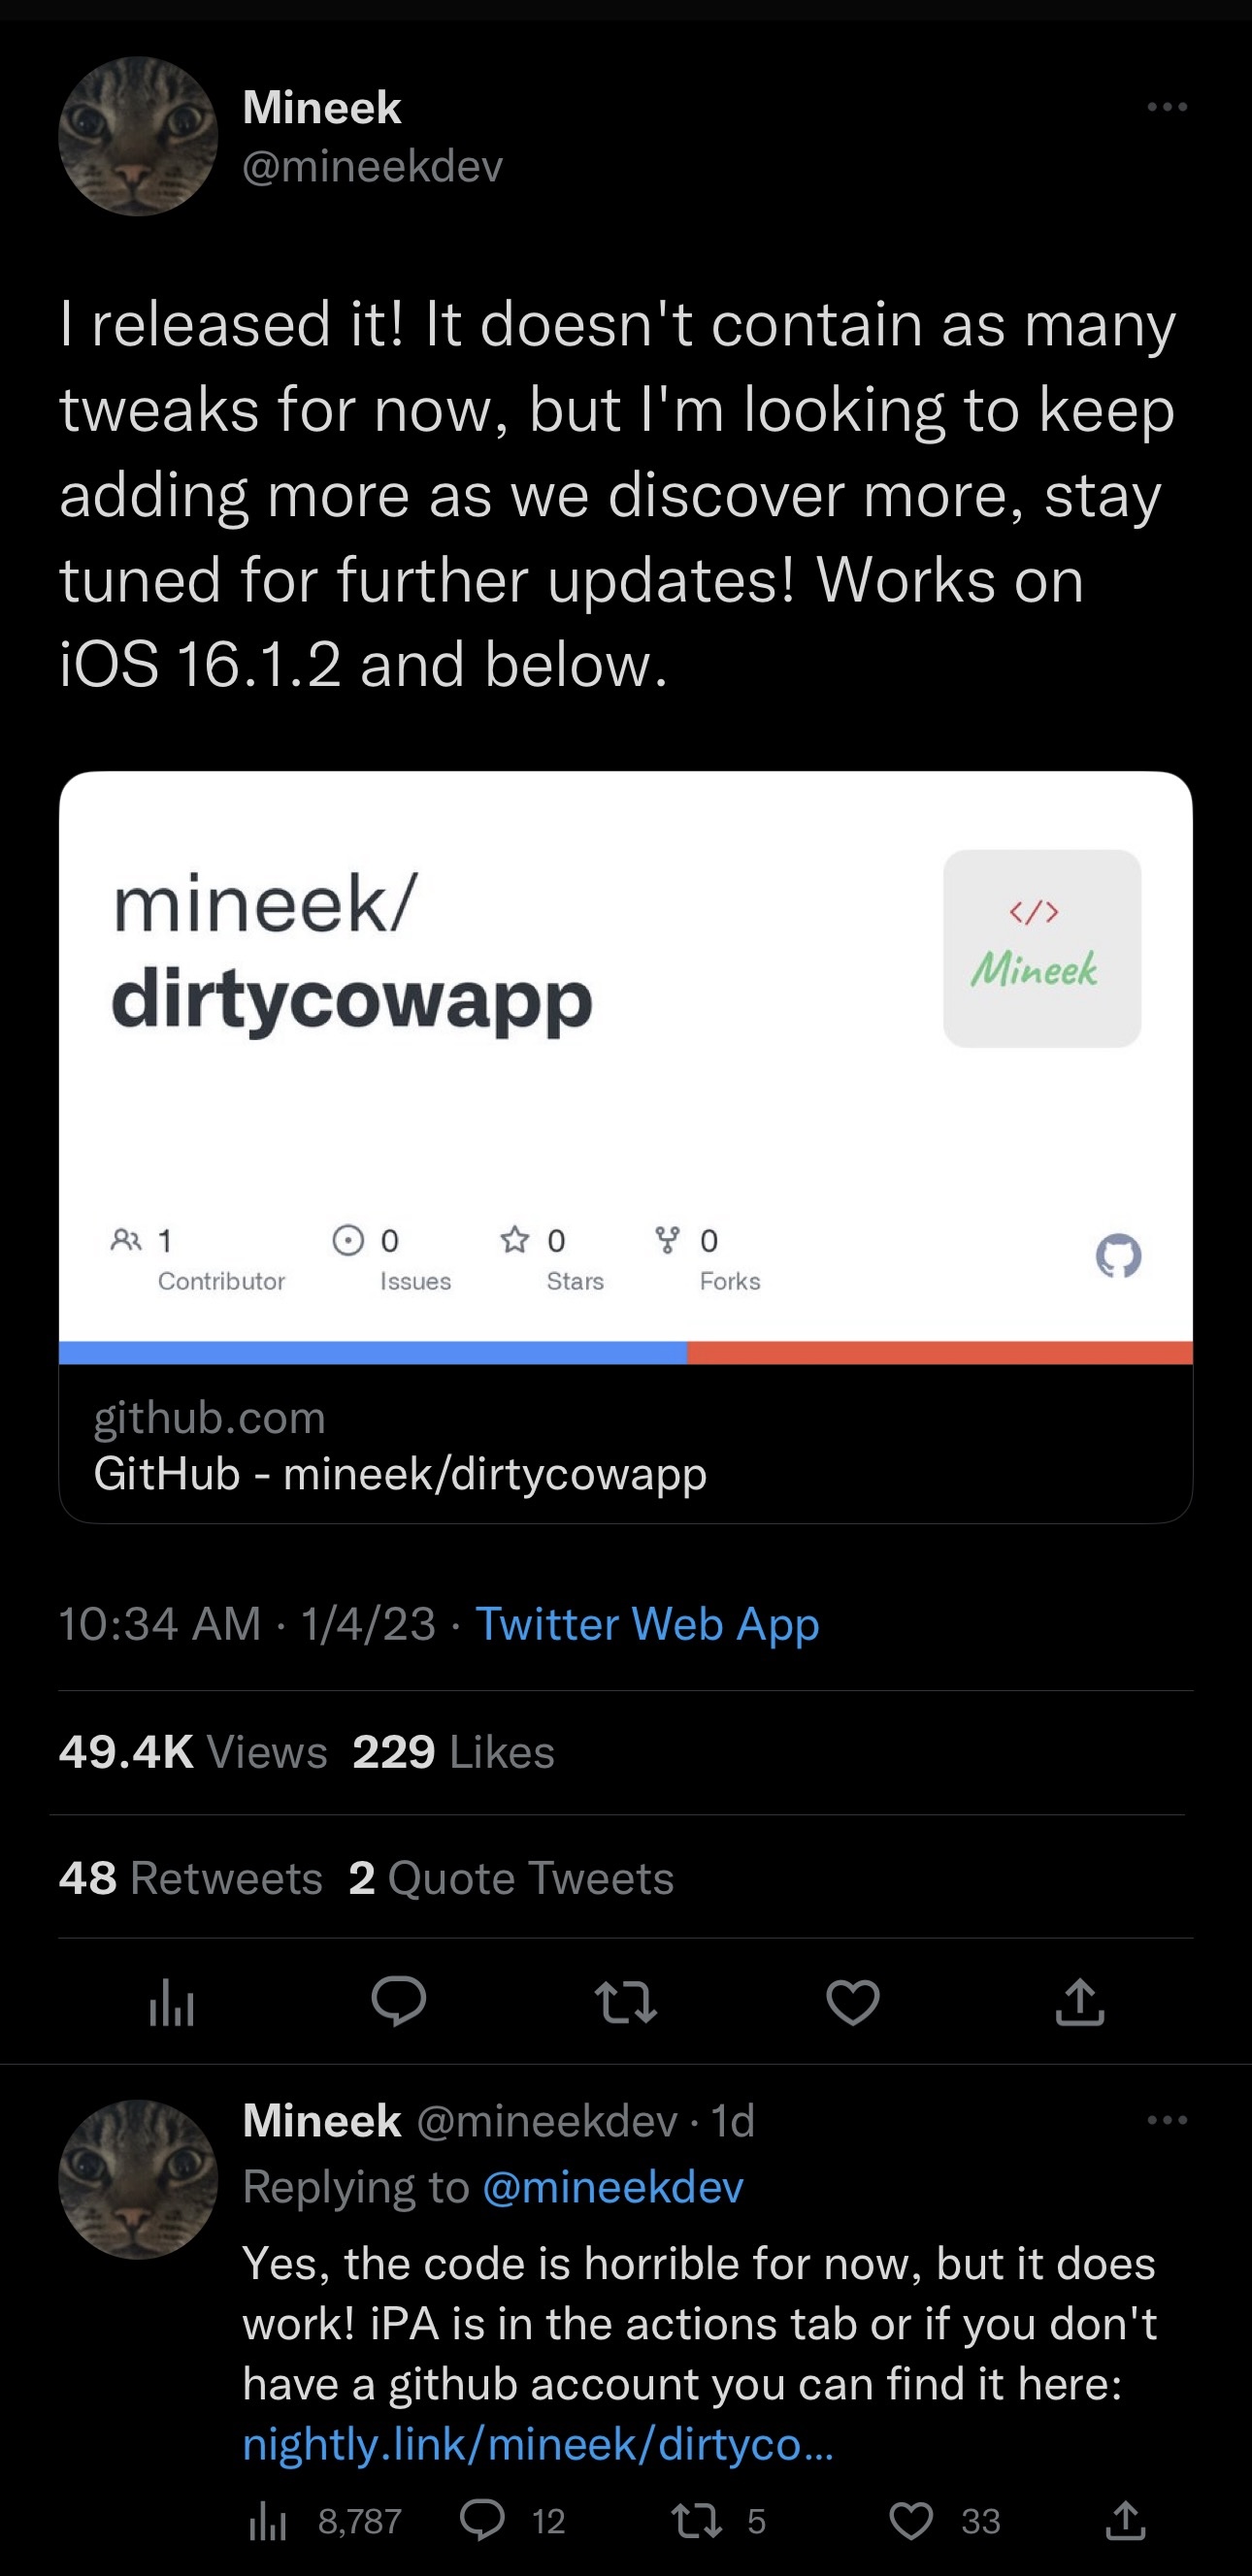 Mineek announces the availability of the dirtycowapp for iOS 15.x-16.1.2.